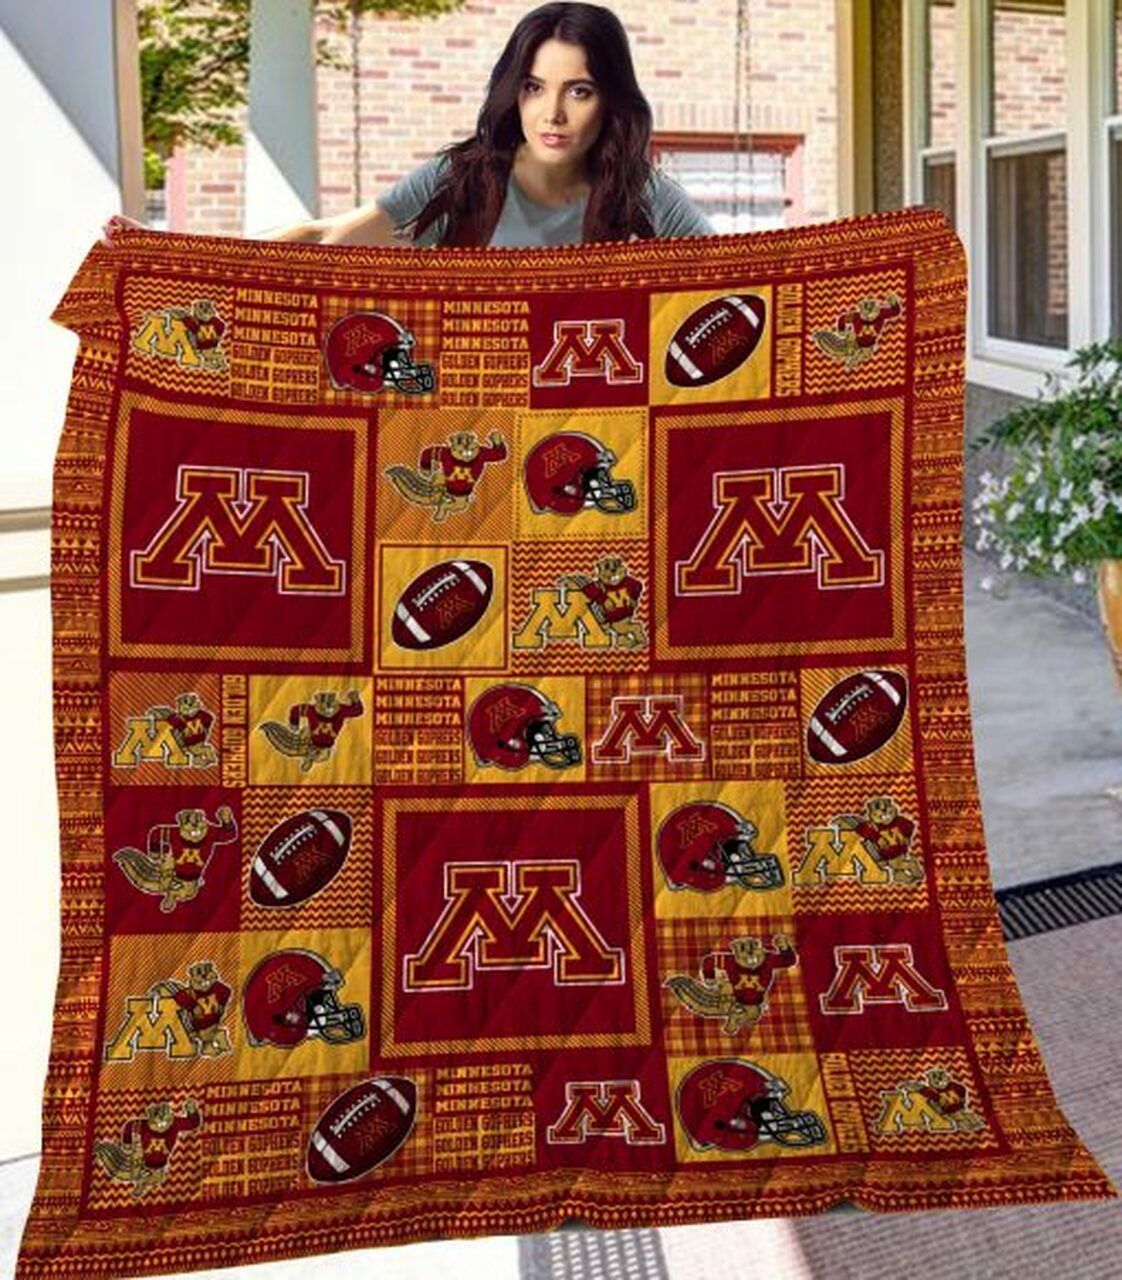 Ncaa Minnesota Golden Gophers Quilt Blanket 476